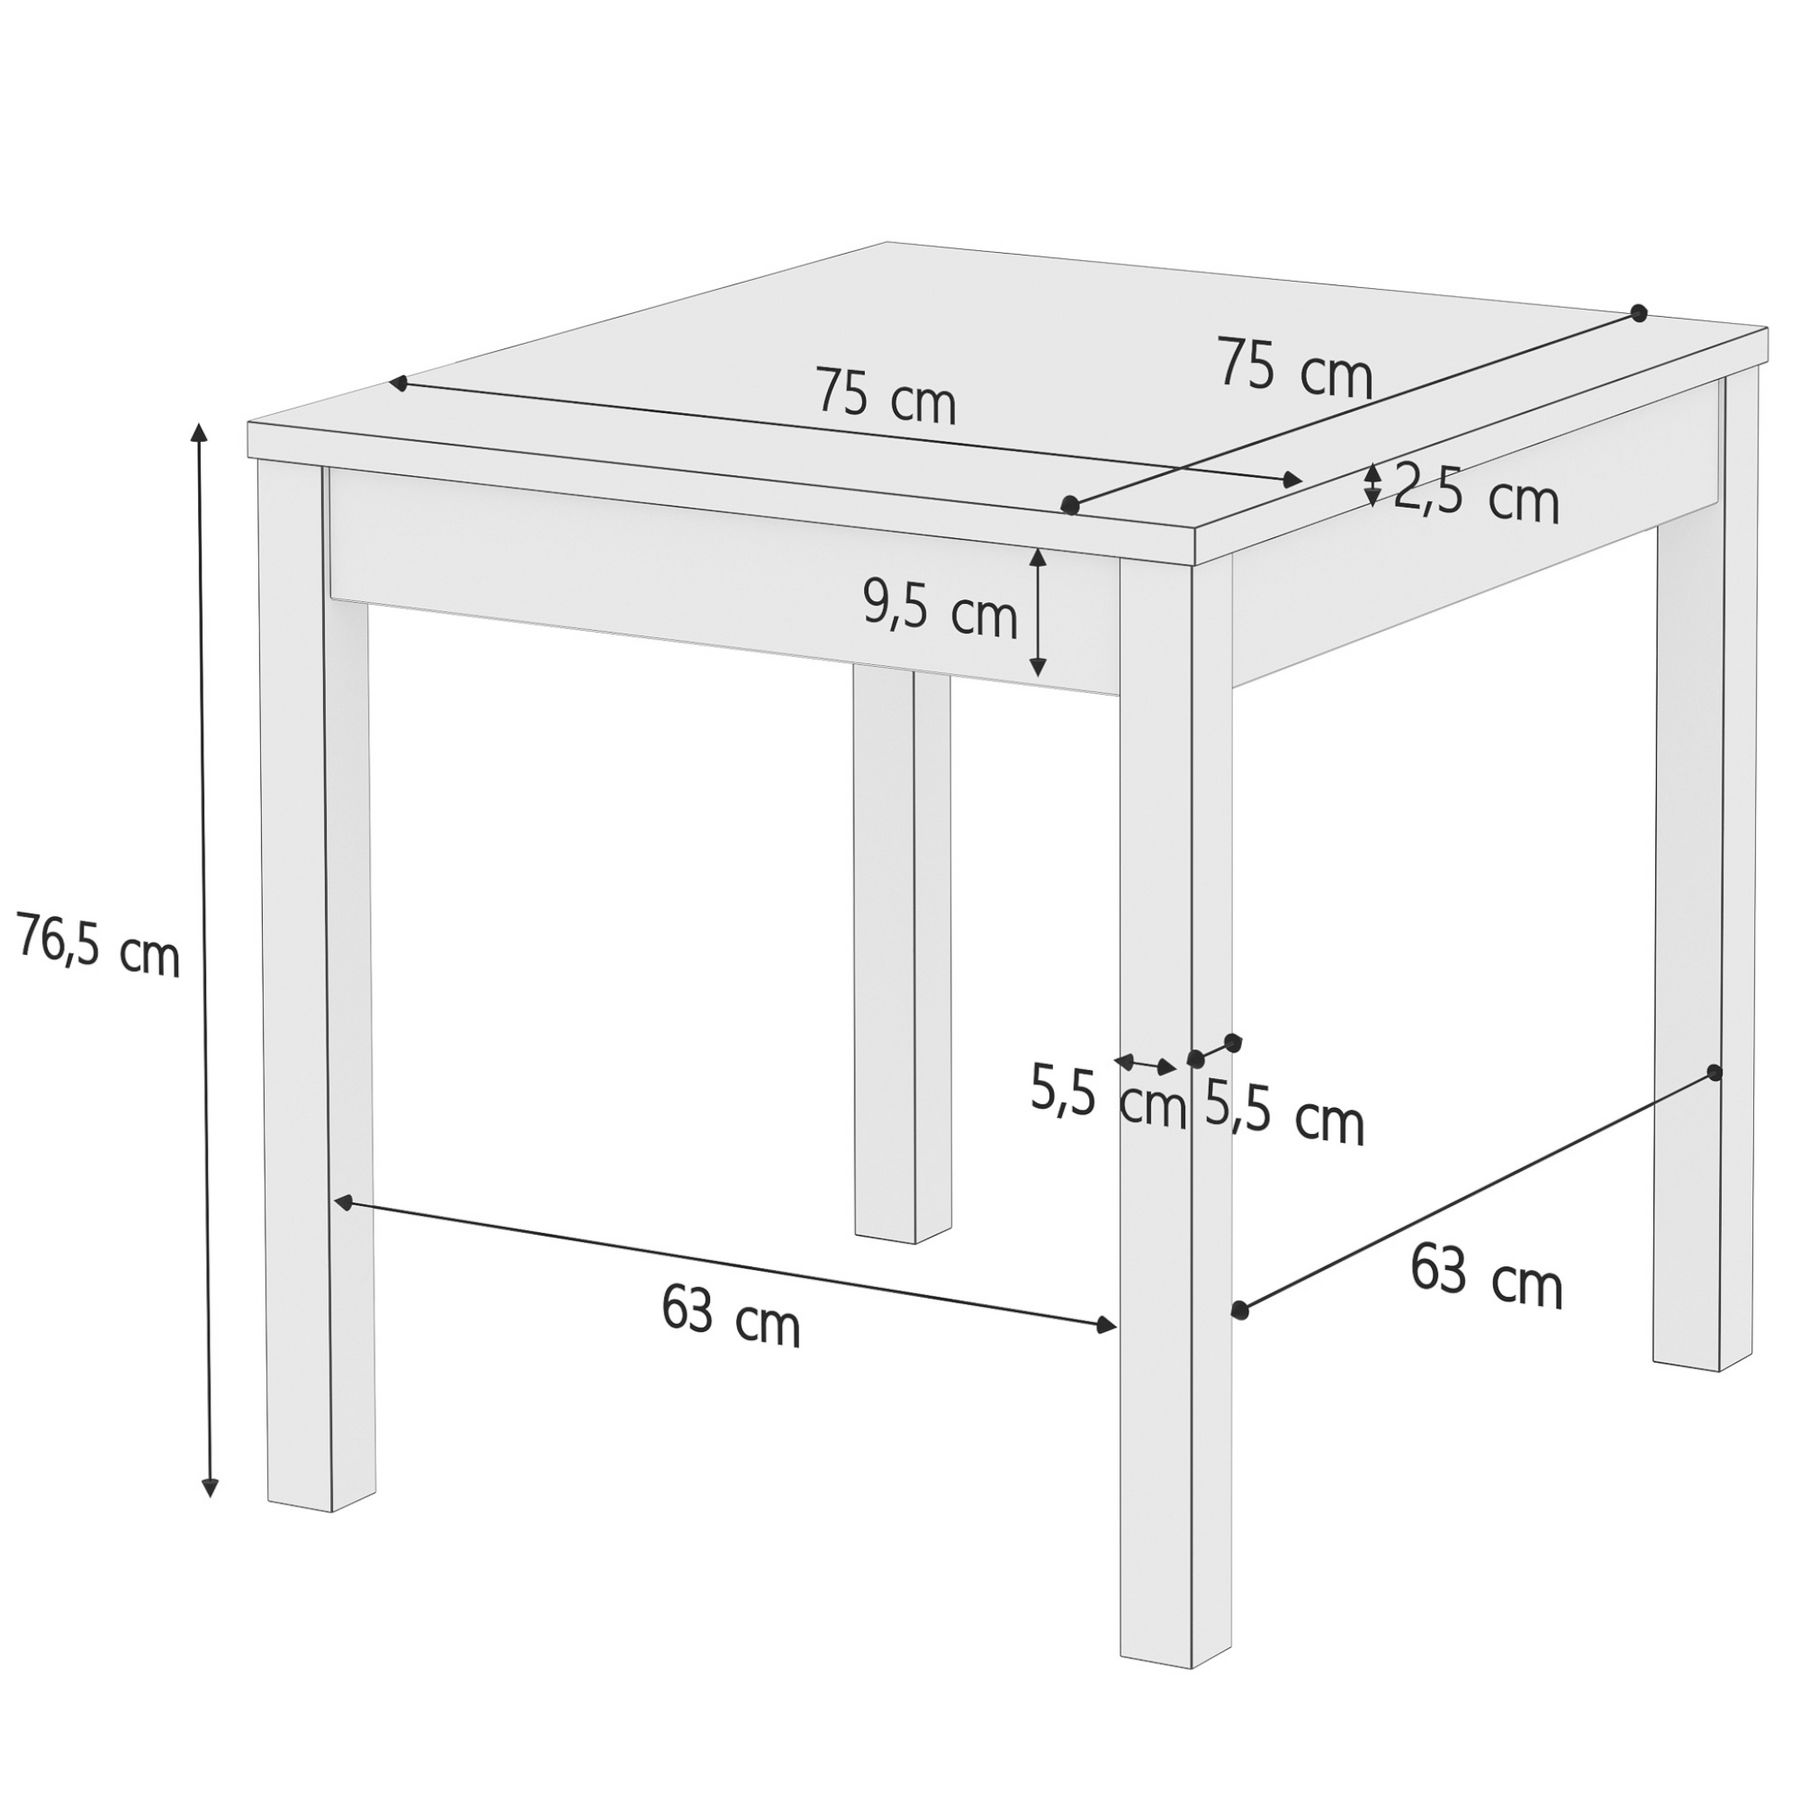 Stabiler Esszimmertisch aus massiver Kiefer, klar lackiert, 75 x 75 cm, Tischbeine Glatt, Schema mit Maße